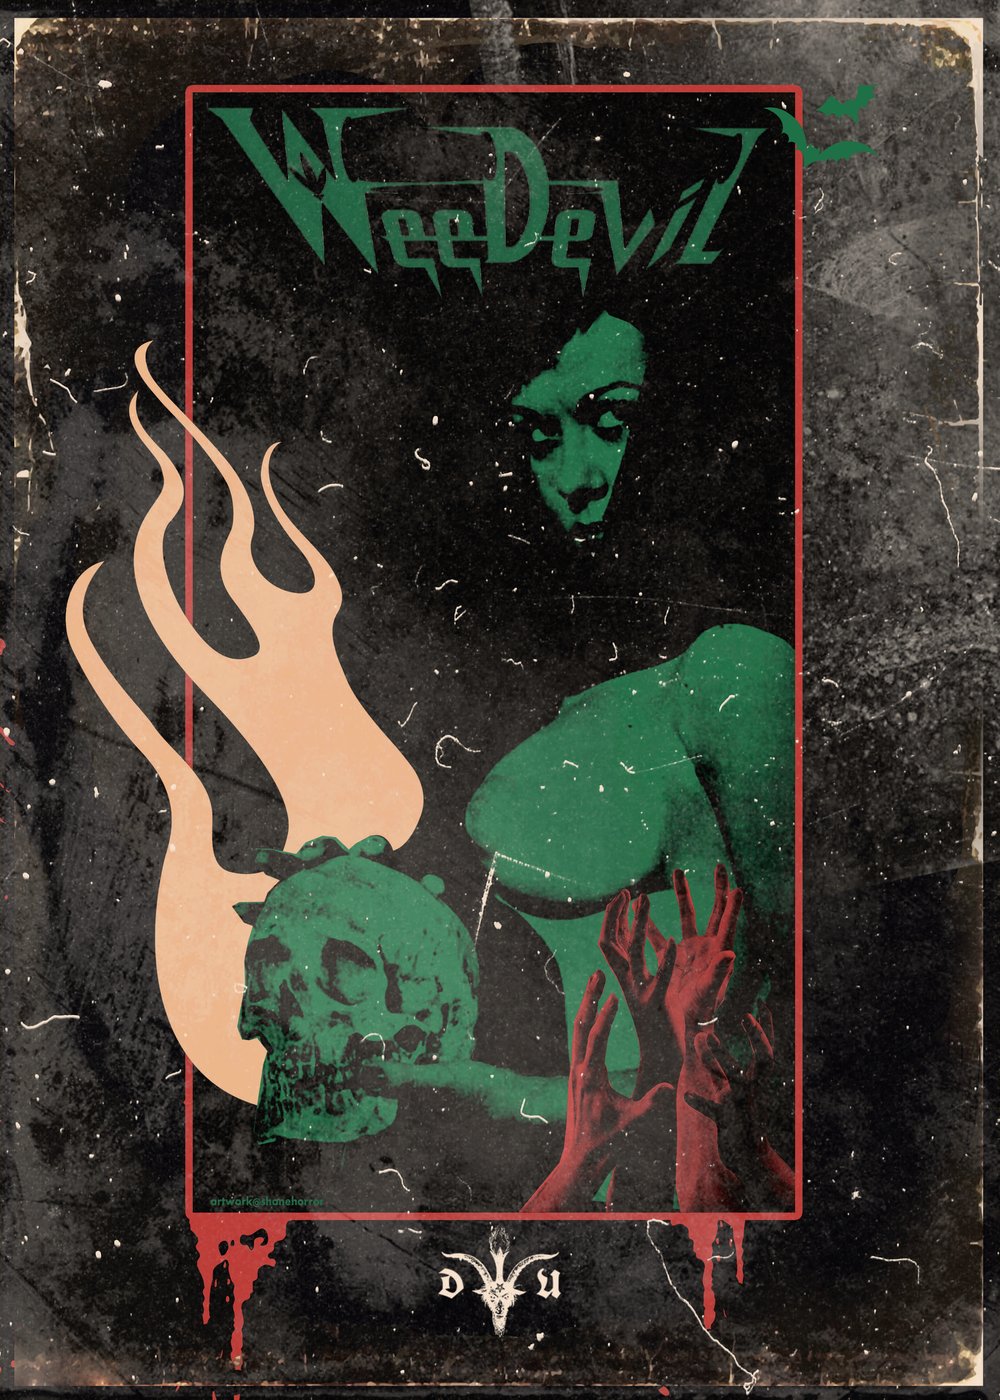 Weedevil ~ The Return